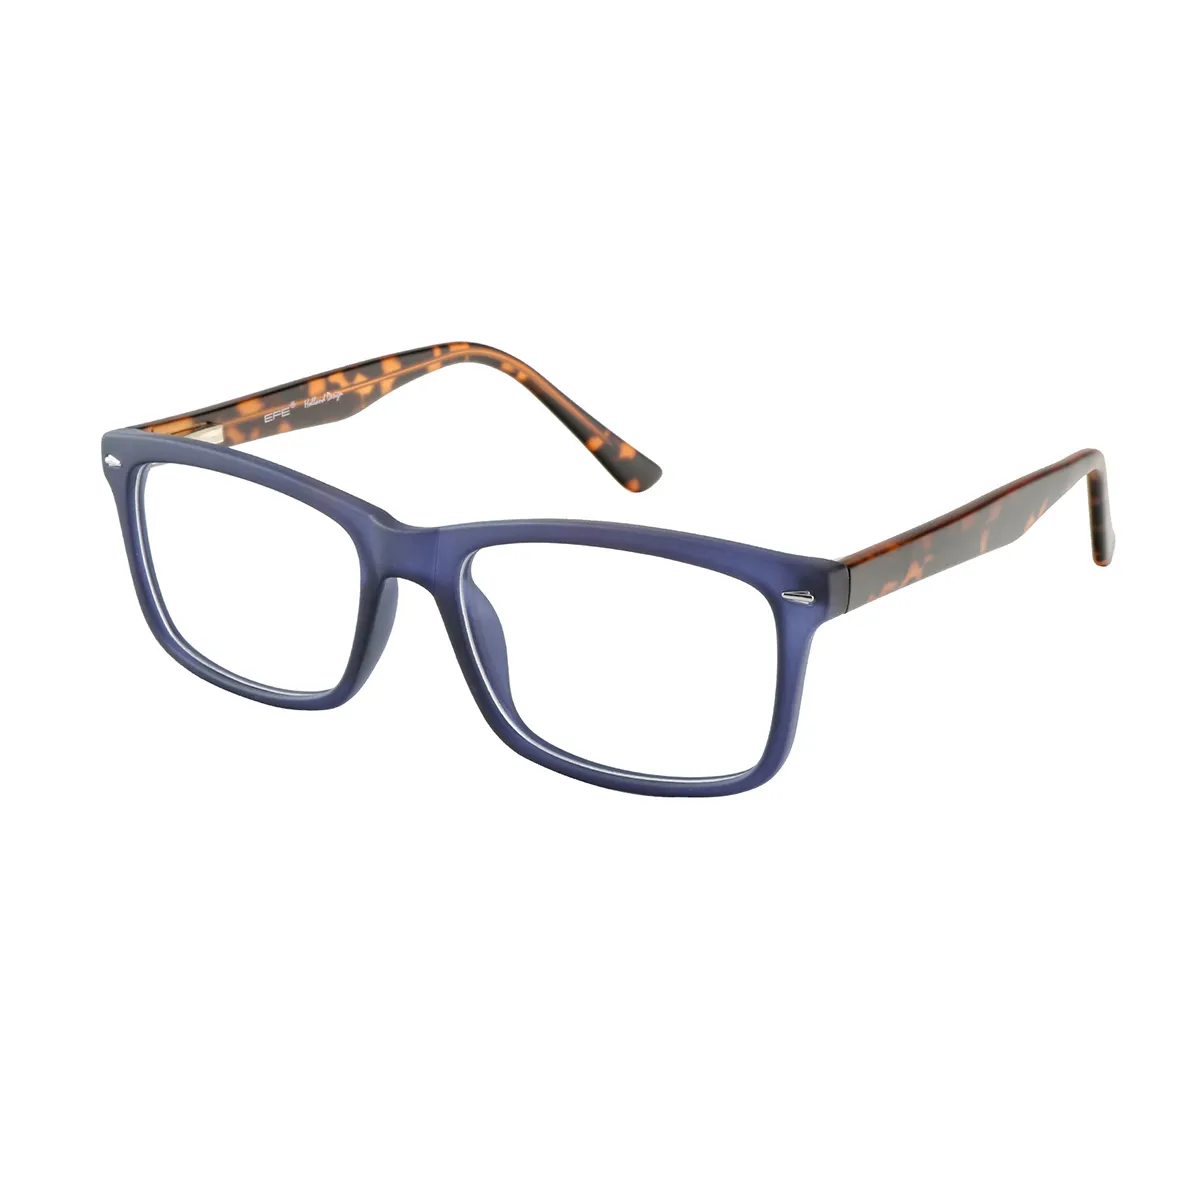 Classic Rectangle Blue-Tortoiseshell Glasses for Men & Women